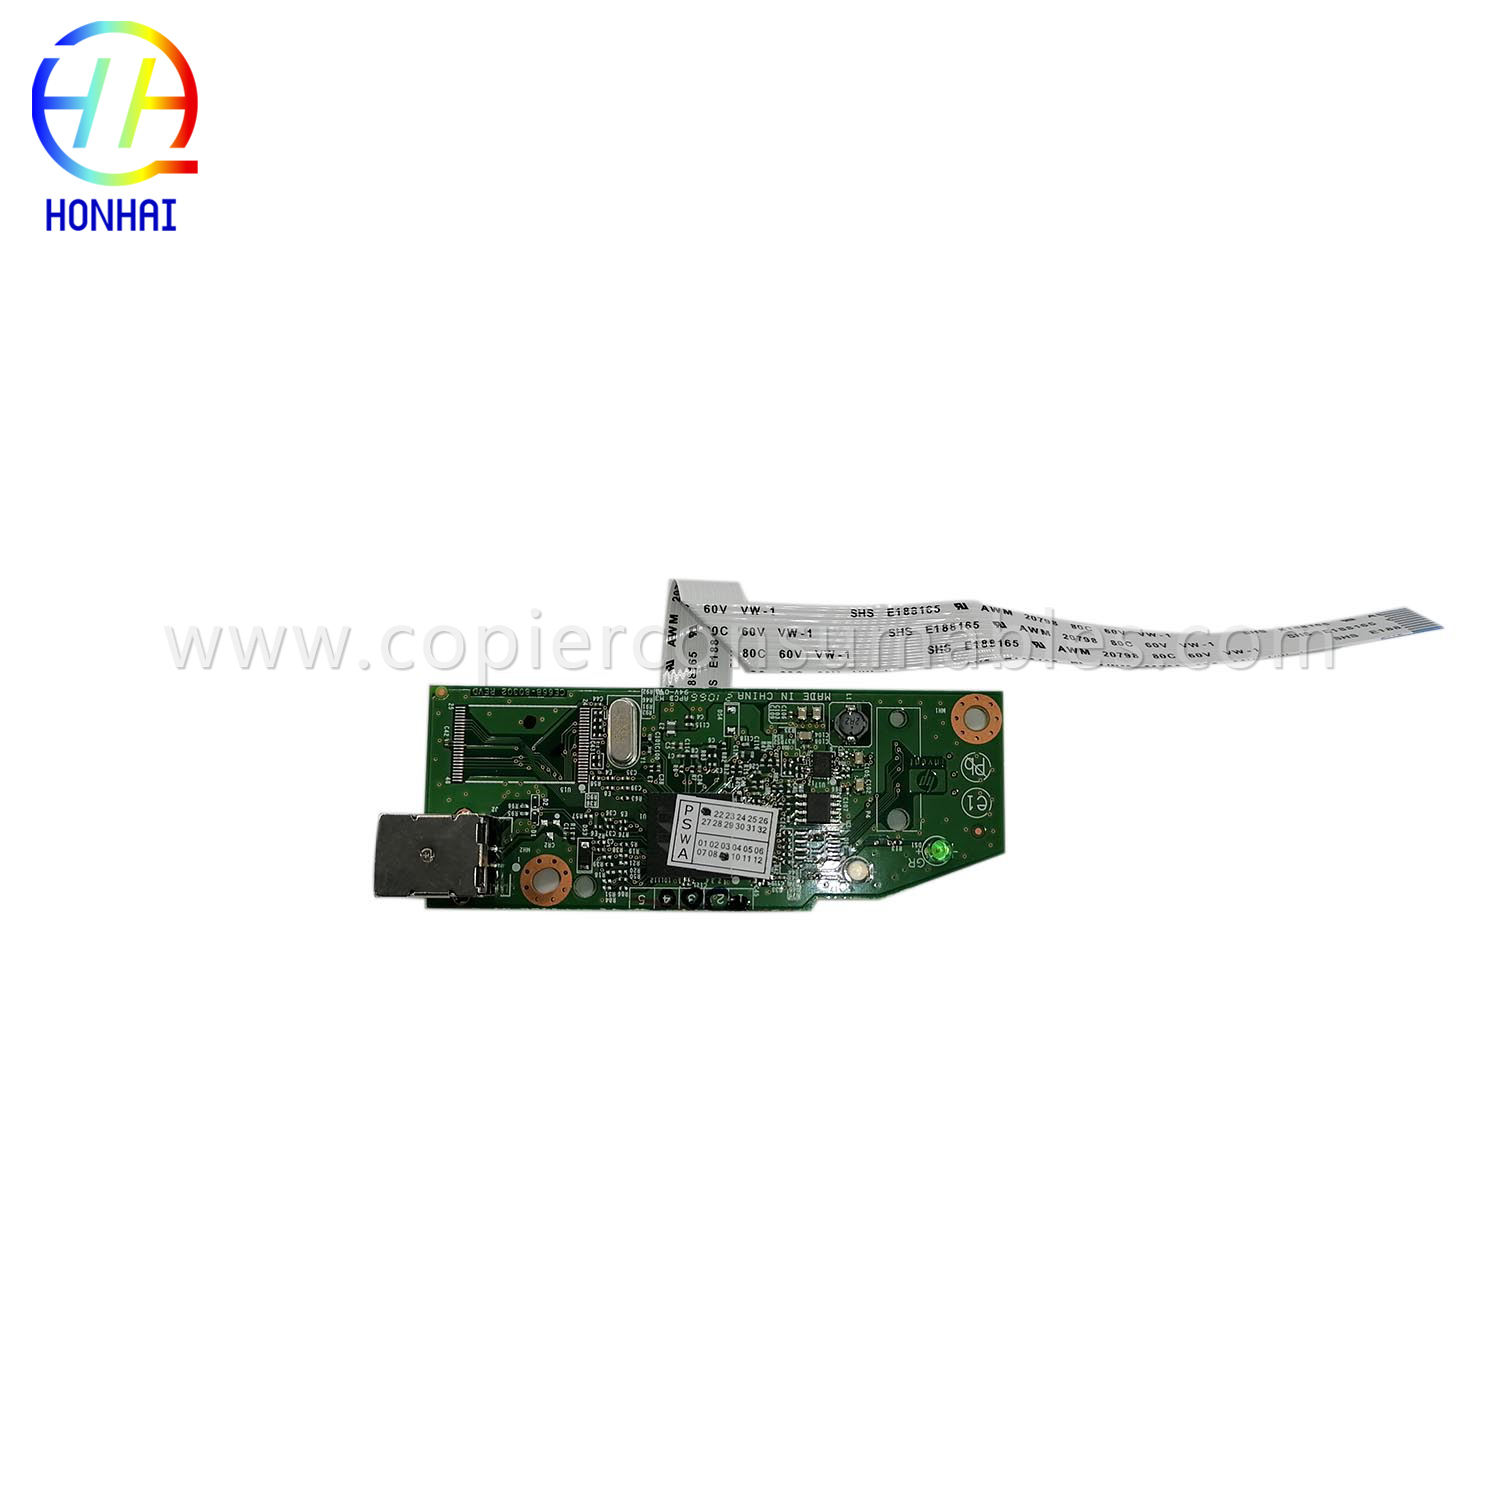 اللوحة الرئيسية لطابعة HP Laser jet 1102 RM1-7600-020CN (1)